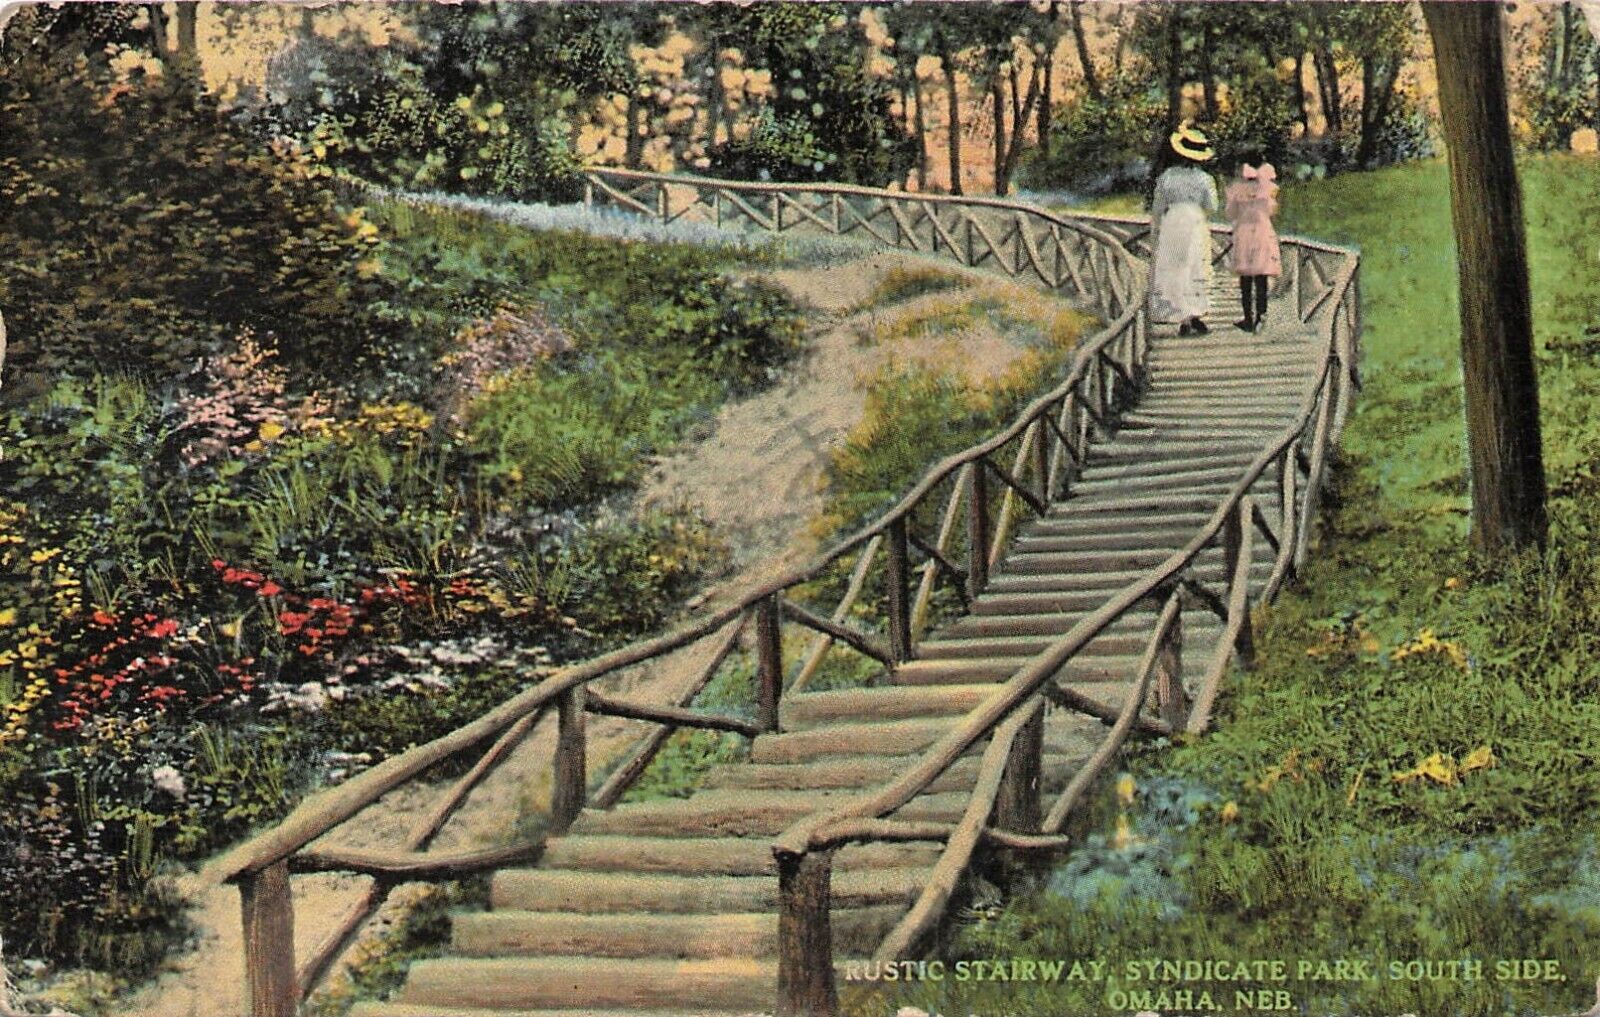 Rustic Stairway, Syndicate Park, South side Omaha, Nebraska